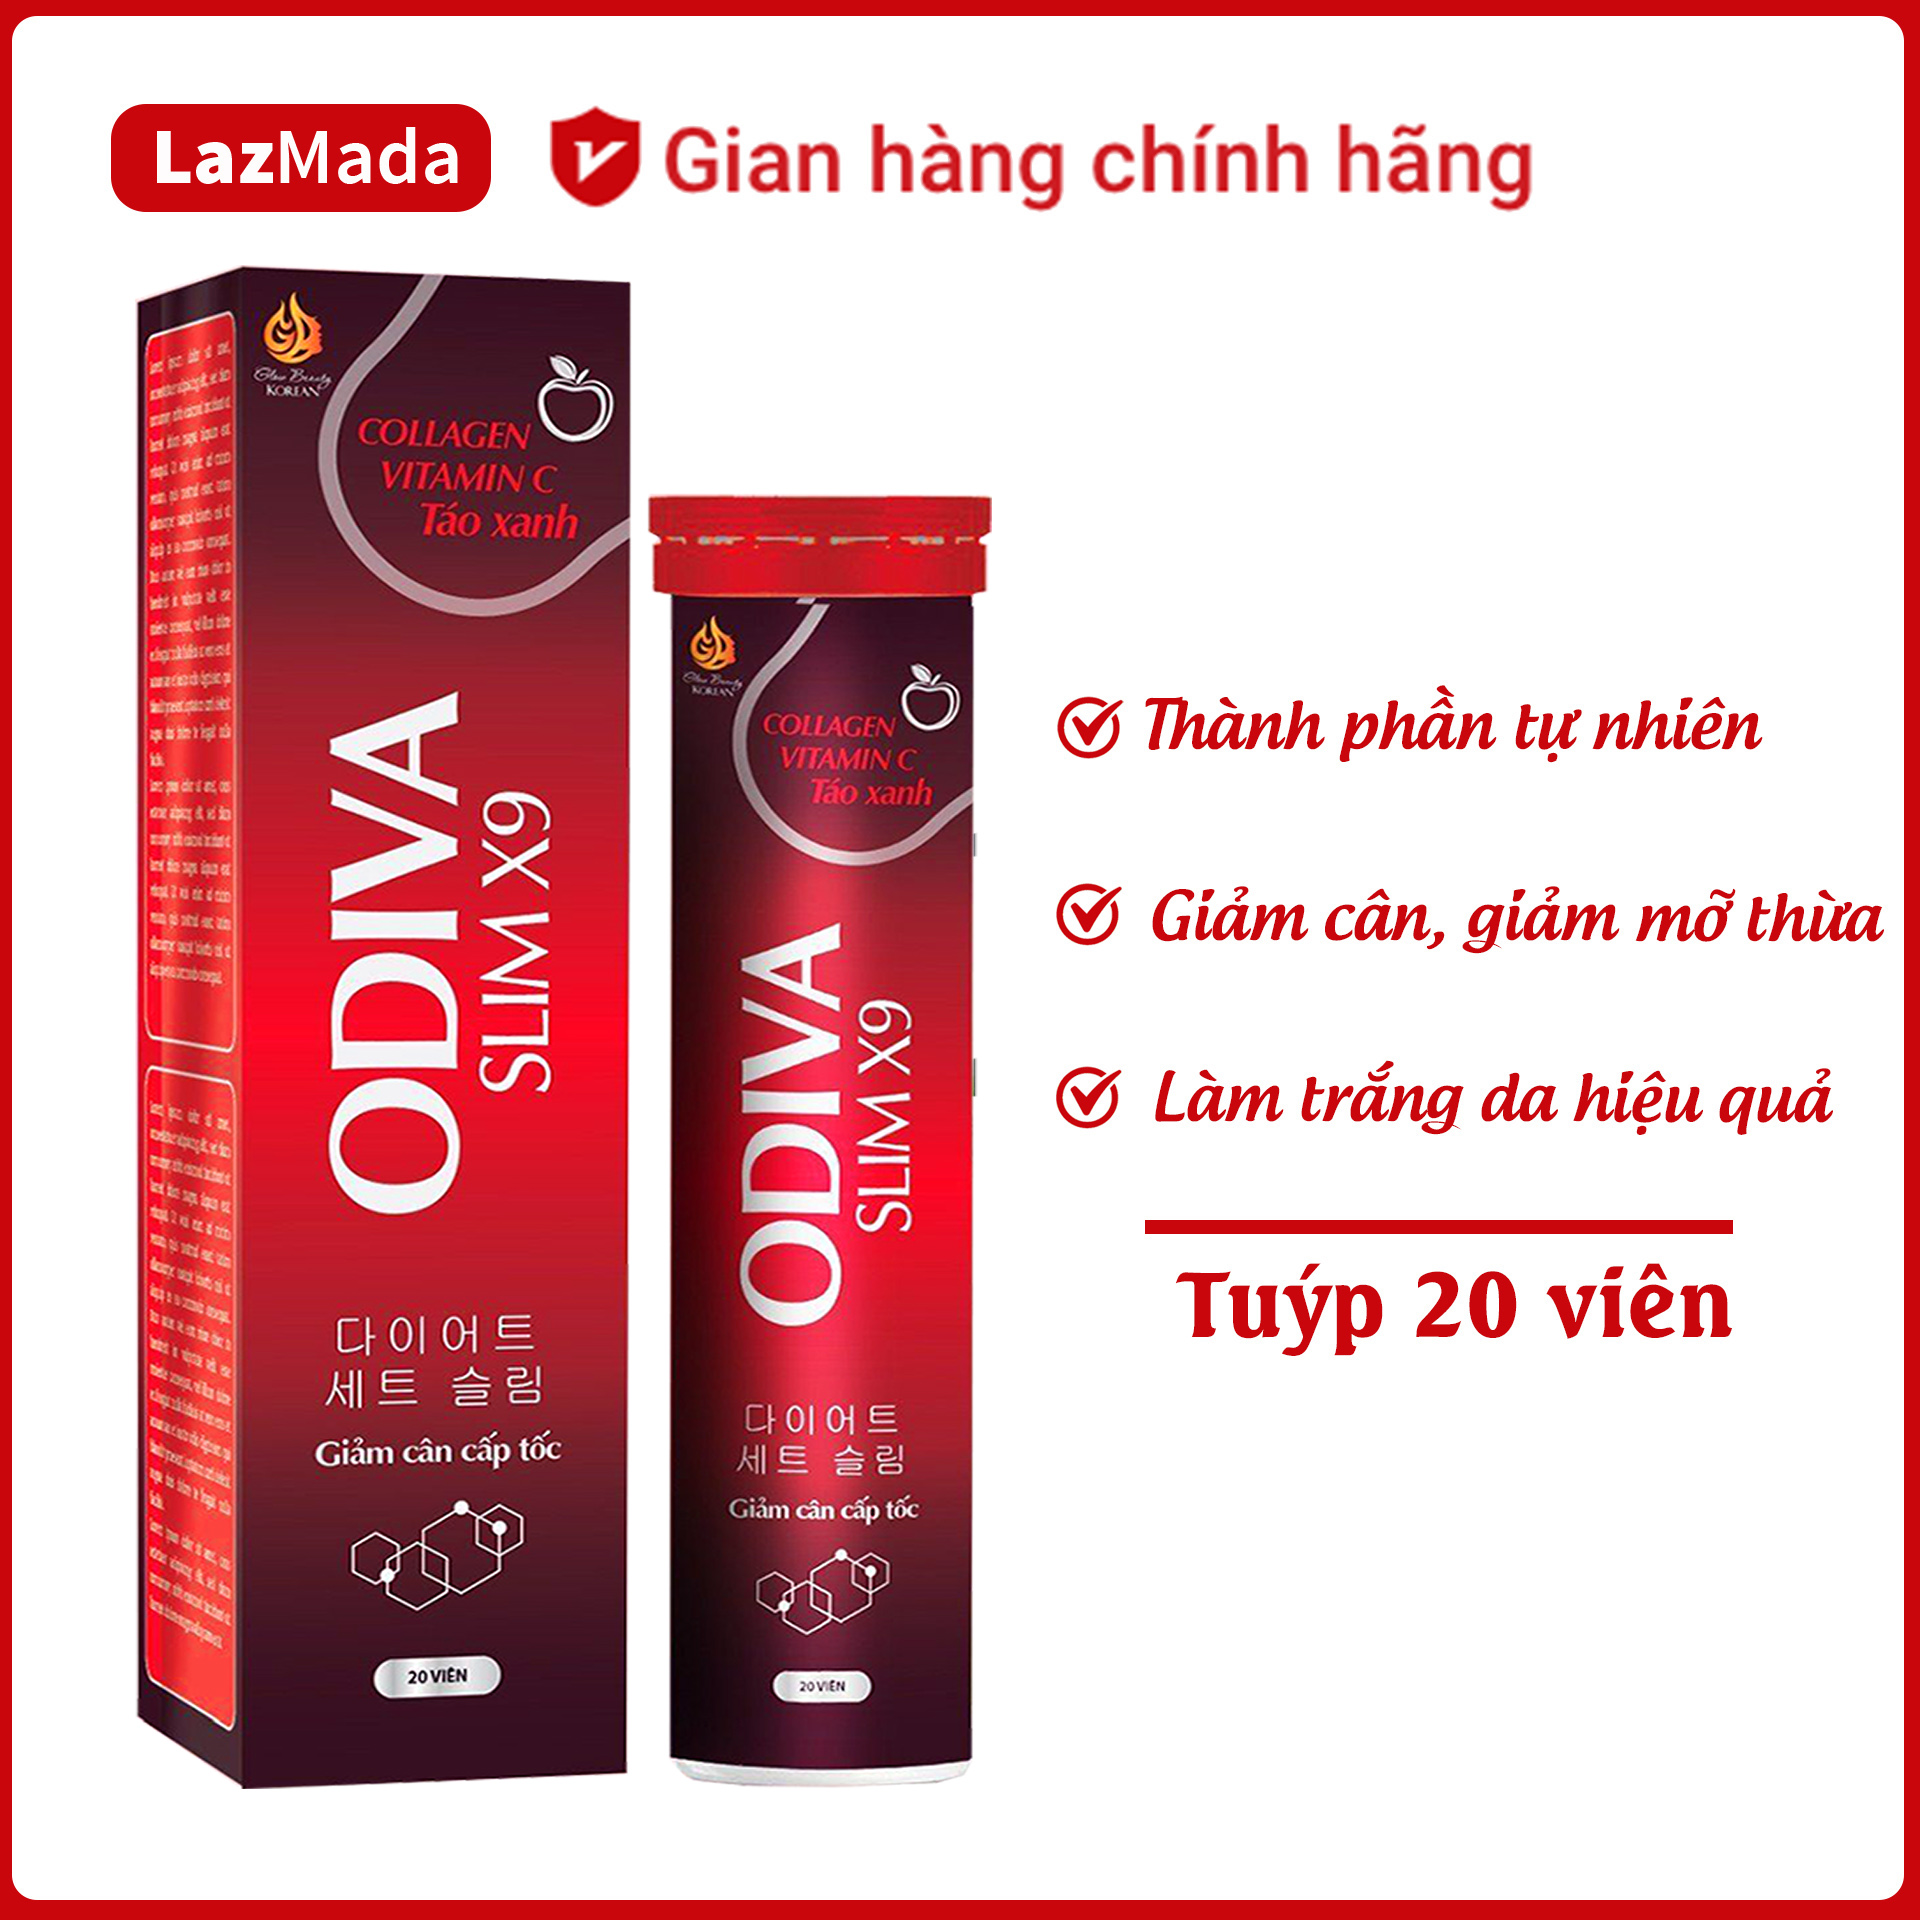 VIên sủi ODIVA Slim X9   lựu đỏ lá sen - Tuýp 20 viên-  giúp giảm béo, giảm cân, đẹp da - Hàng chính hãng